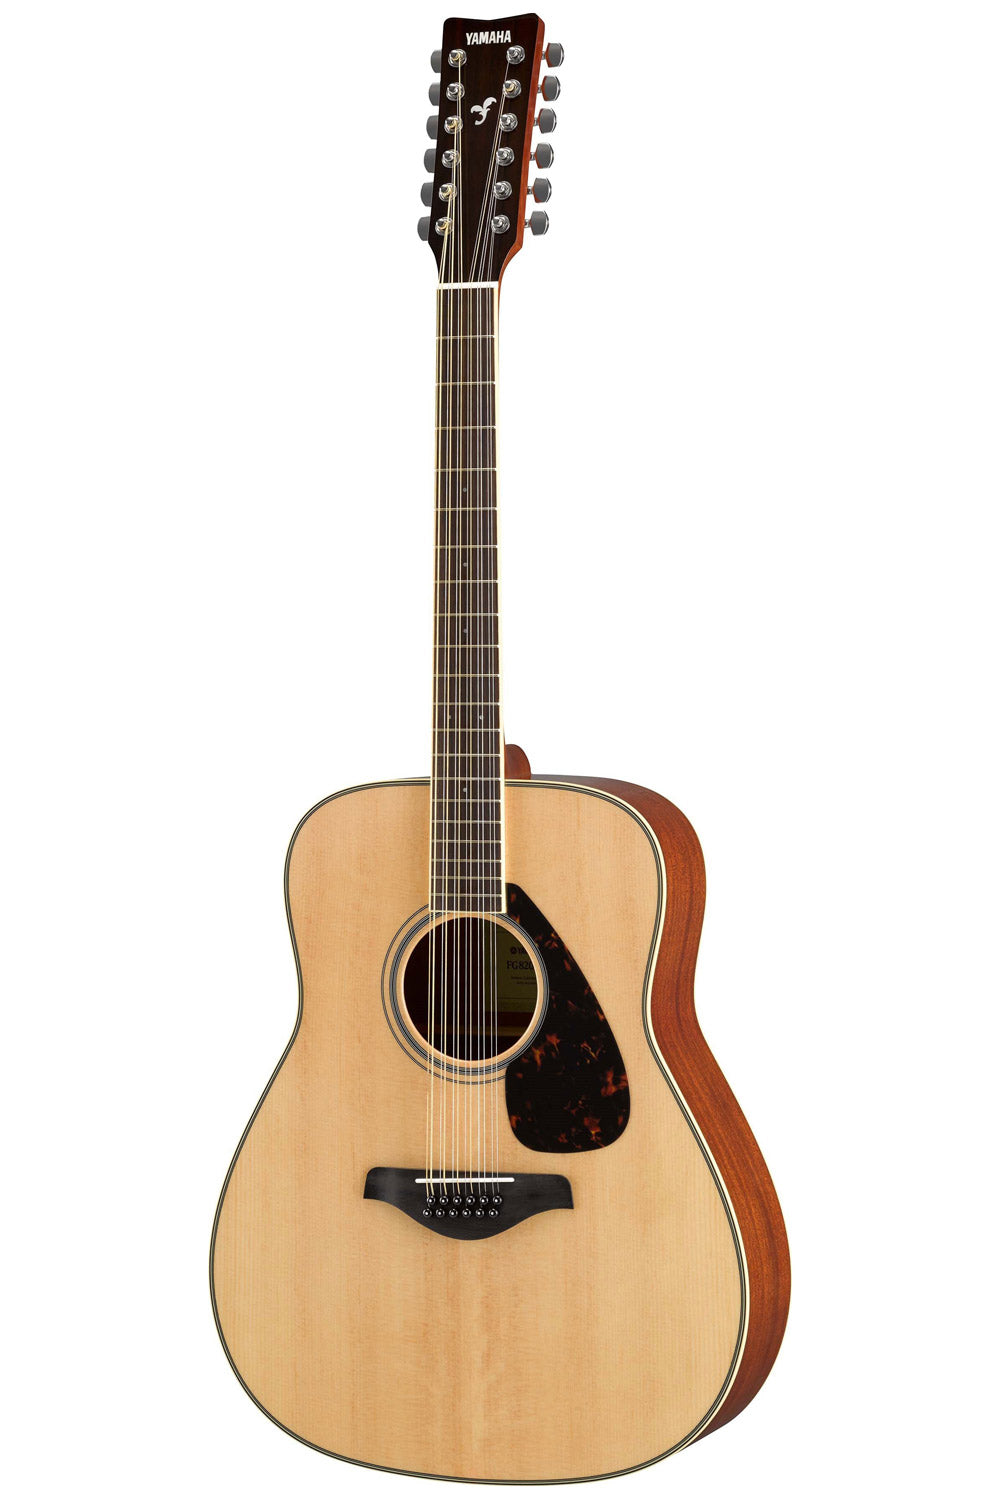 Yamaha FG820-12 12-String Acoustic Guitar - Natural